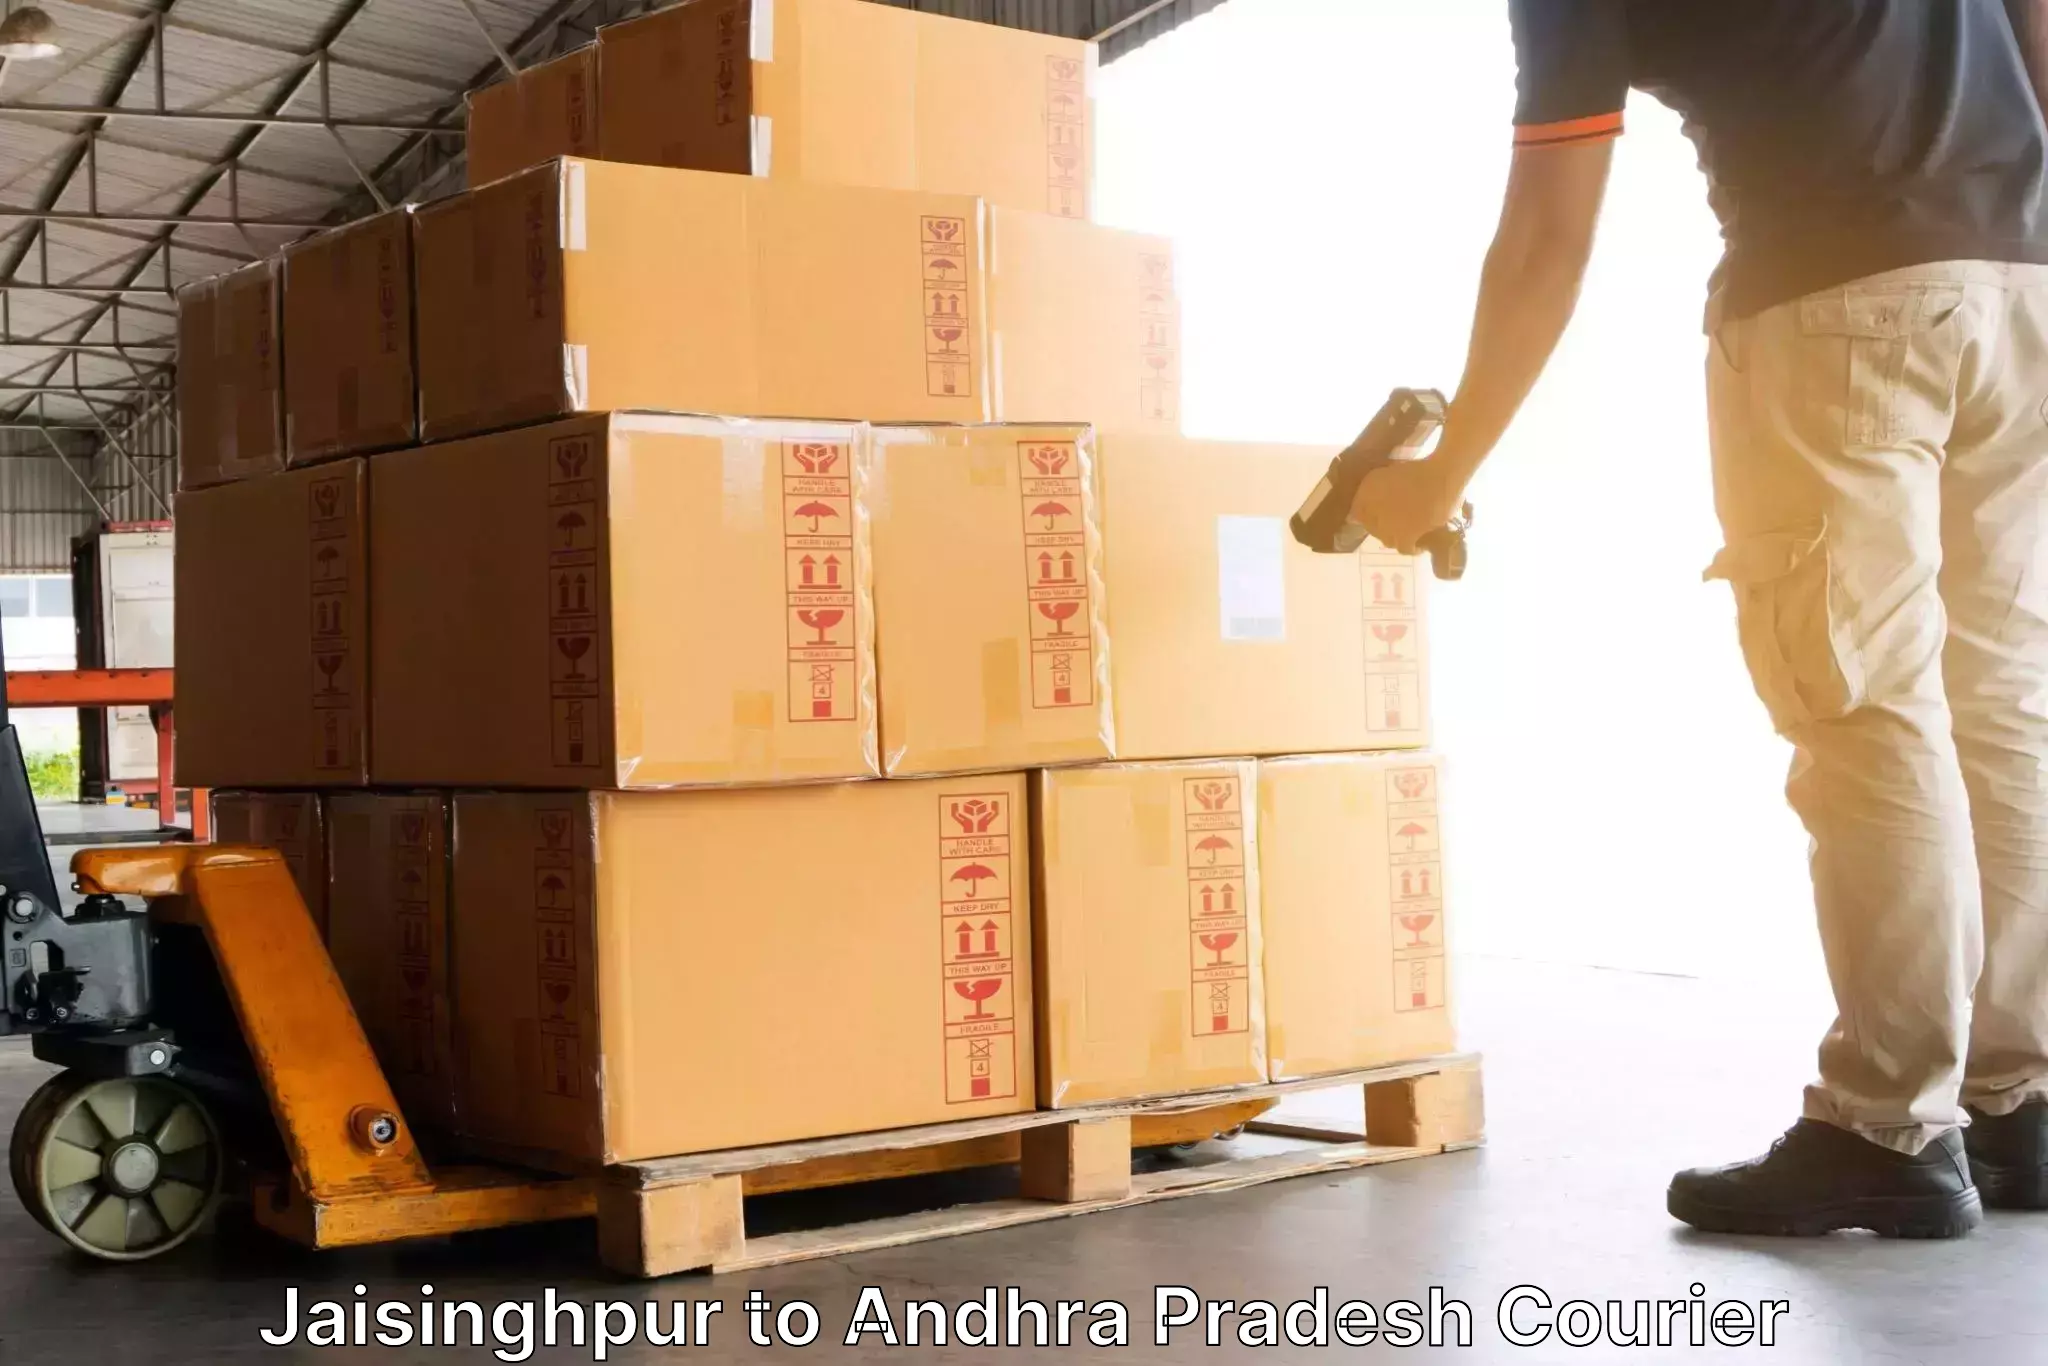 Tailored freight services Jaisinghpur to Macherla